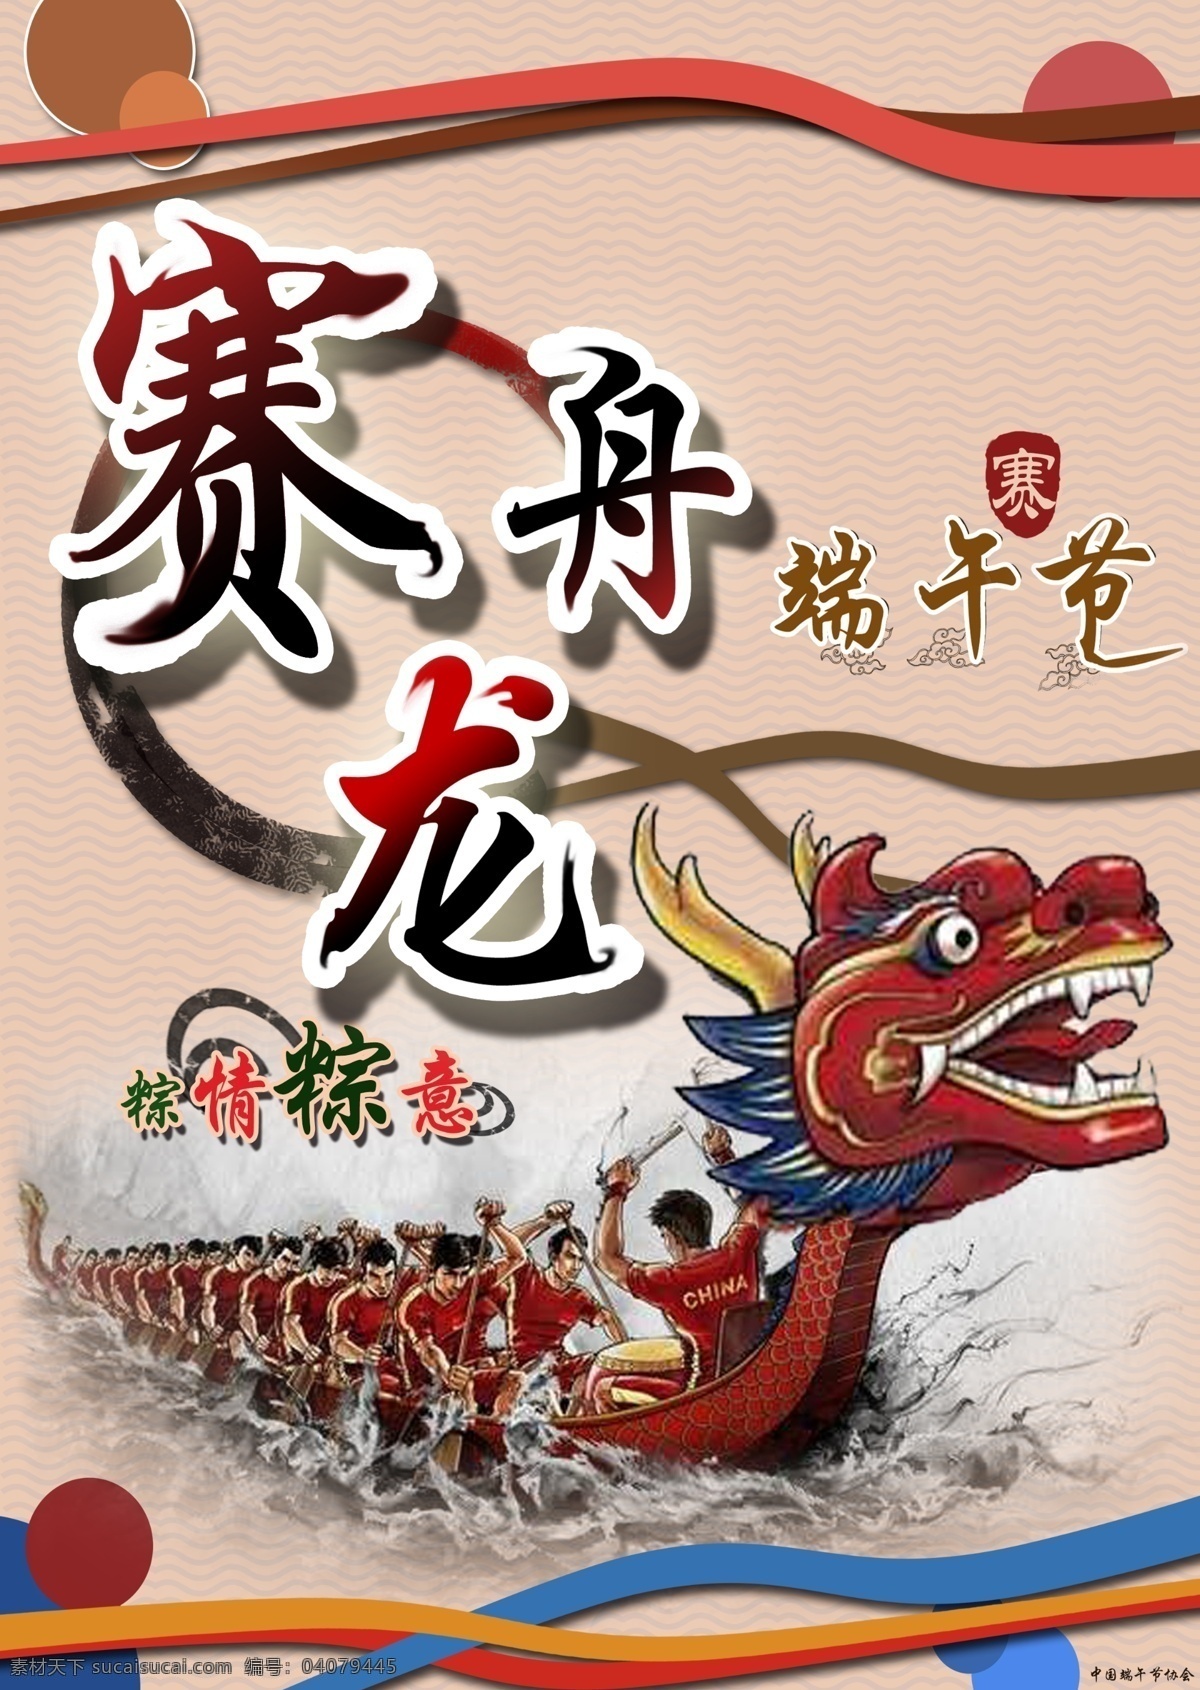 龙舟 赛龙舟 中国风 端午节